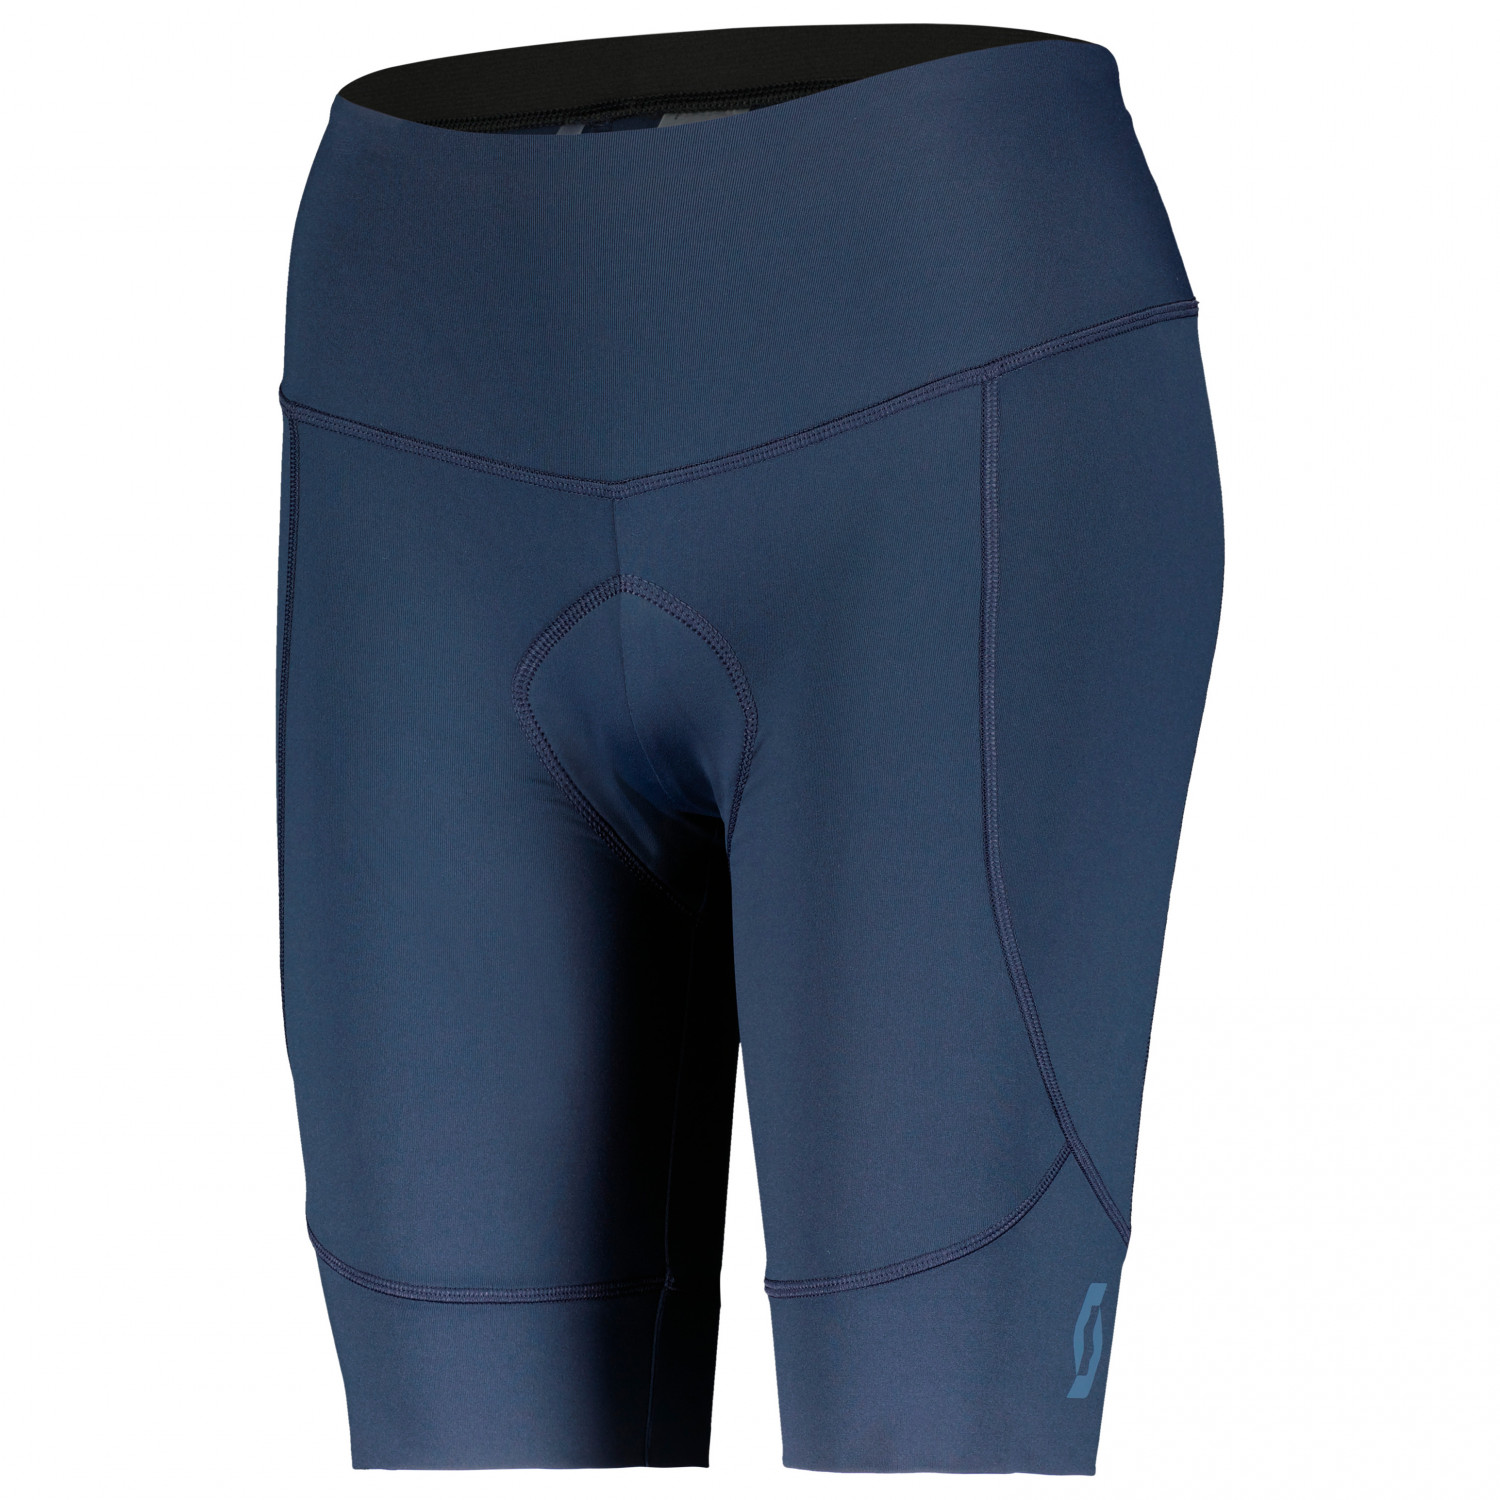 Велосипедные шорты Scott Women&apos;s Shorts Endurance 10 +++, цвет Dark Blue/Metal Blue